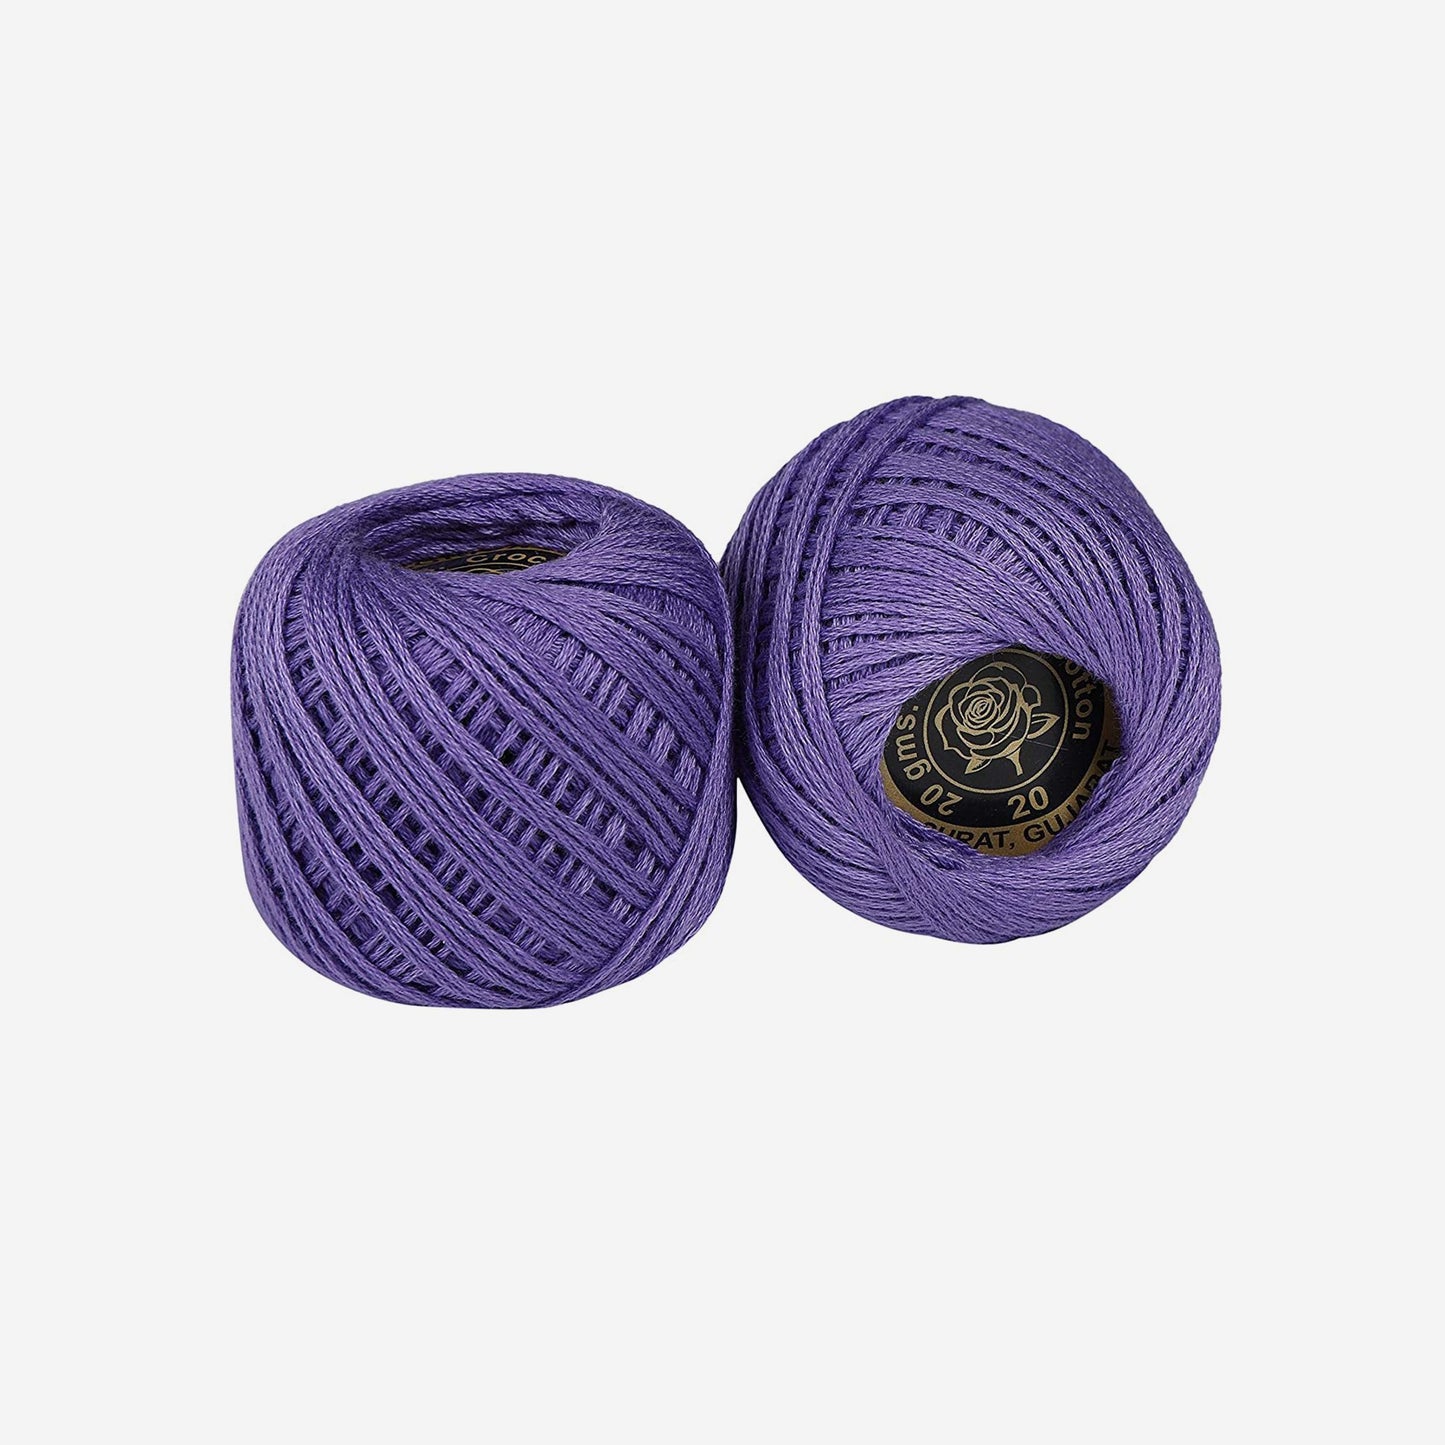 Hand-crochet hoops (Variation 19)